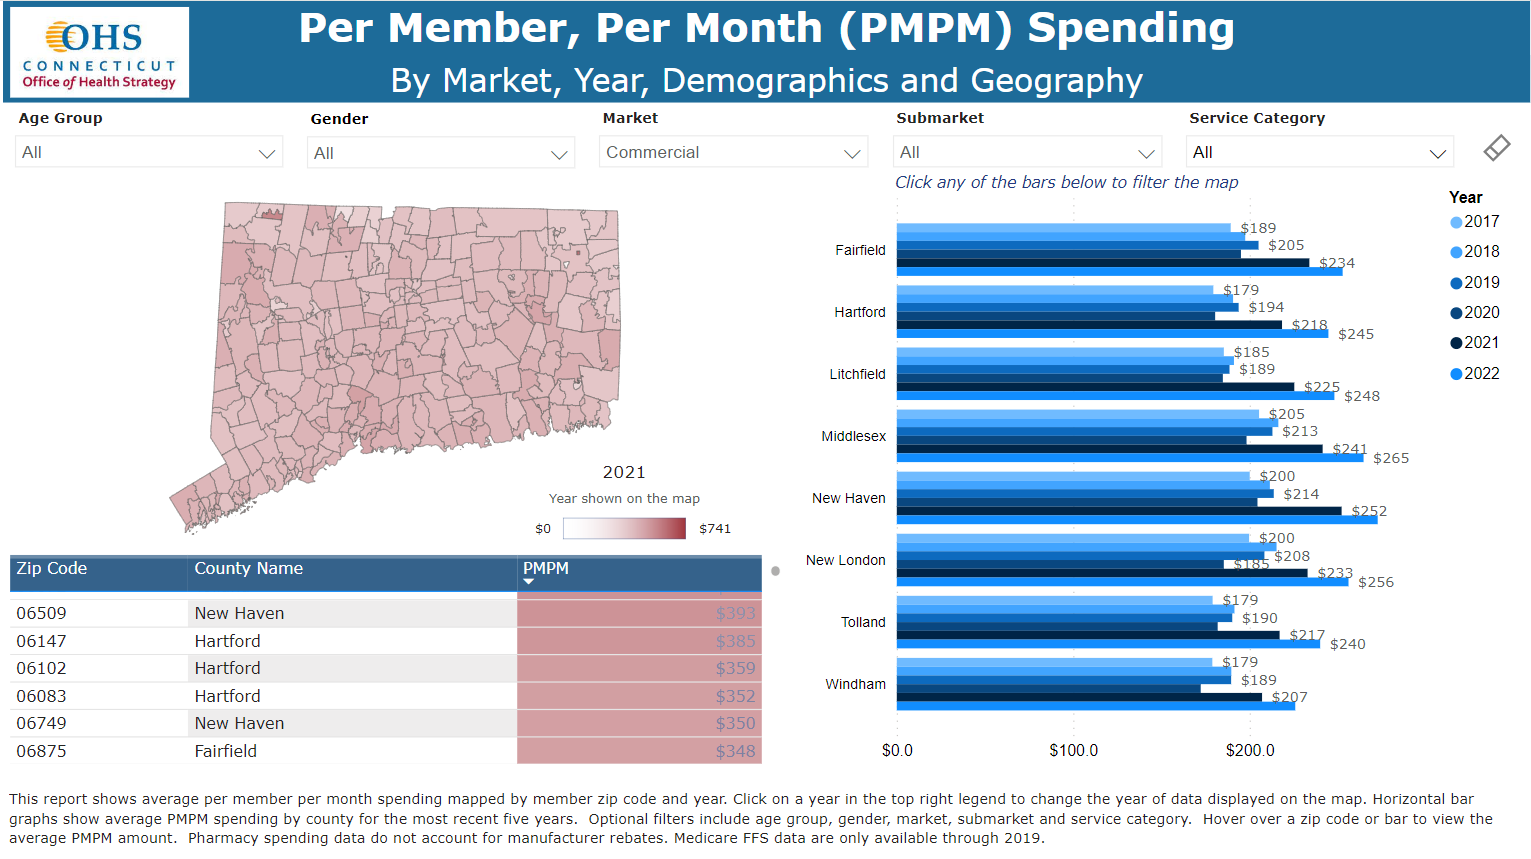 Per Member, Per Month Spending